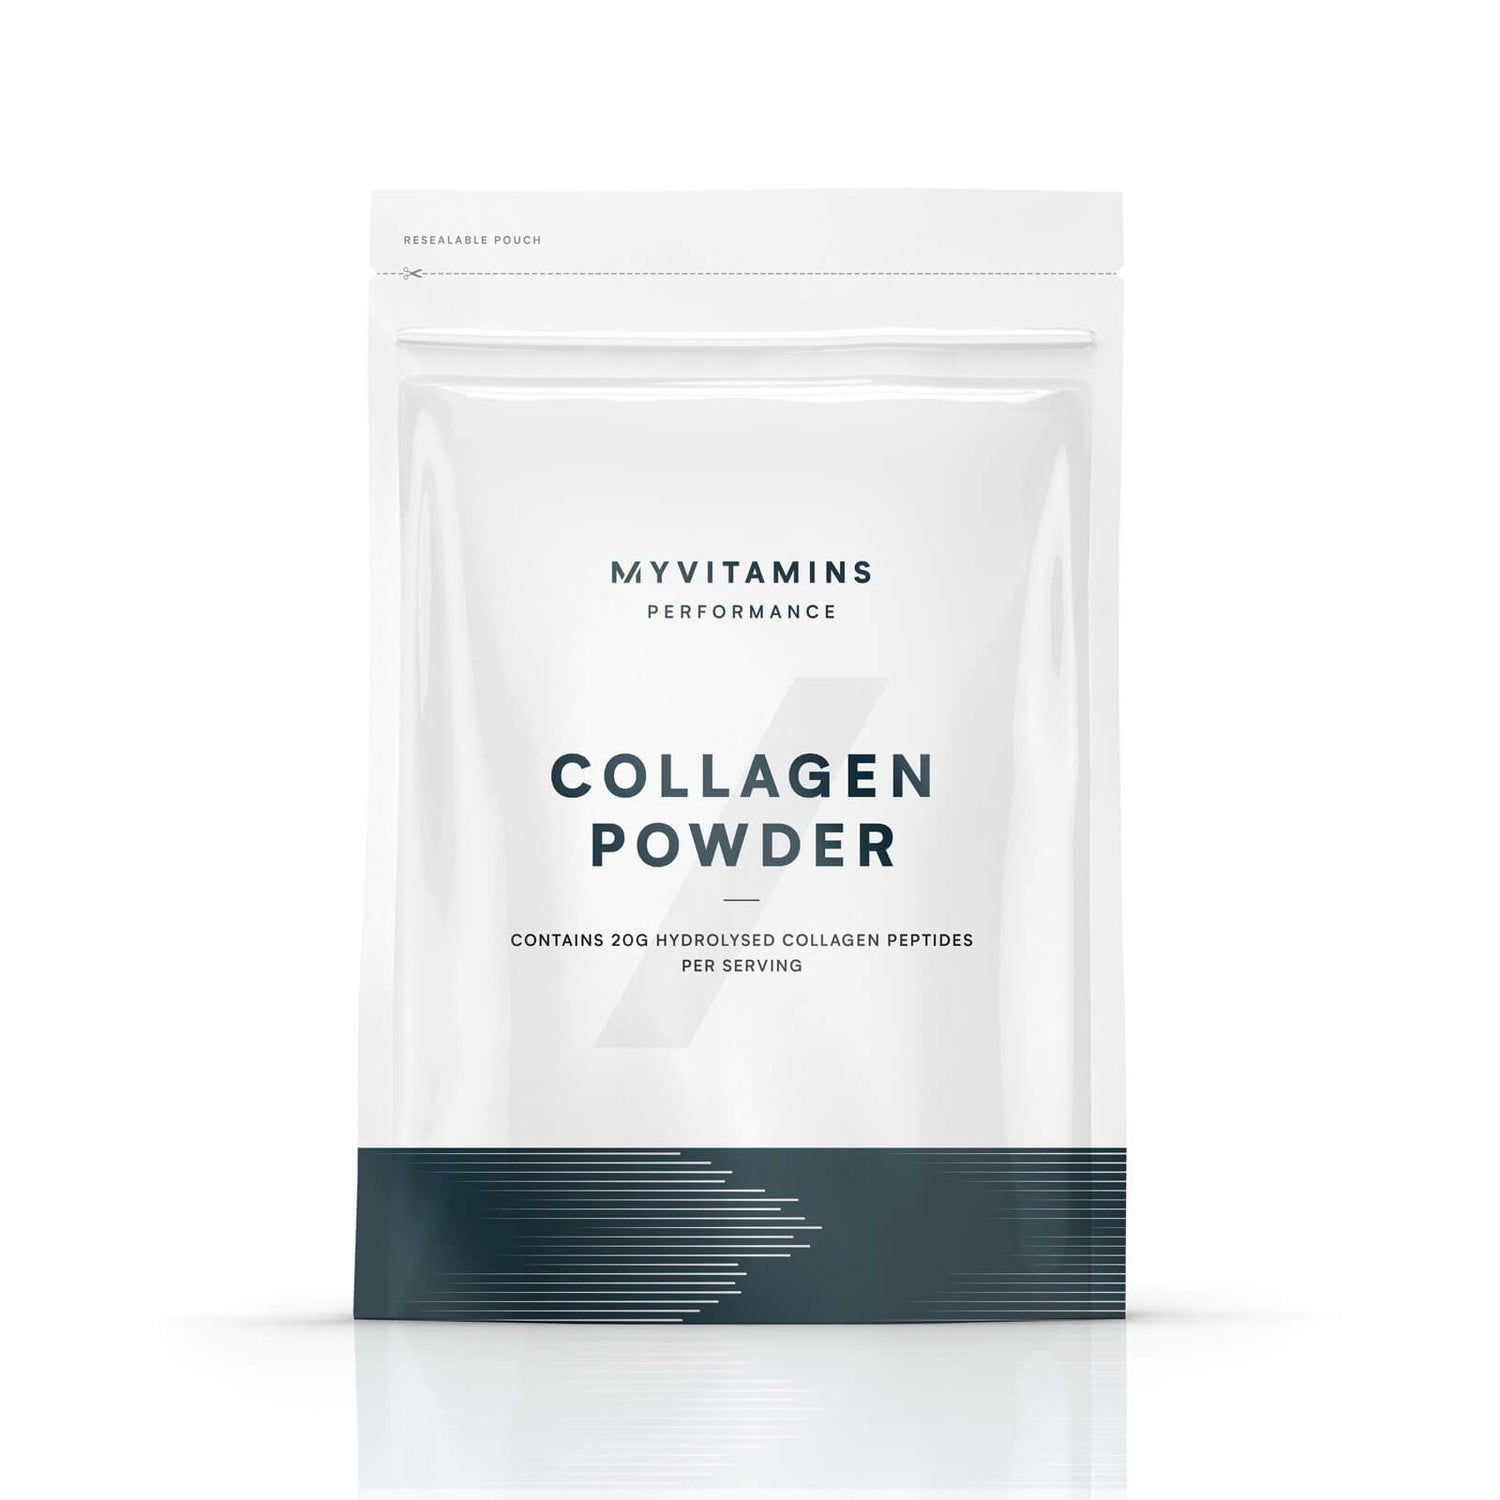 Collagen Powder - 250g - Unflavoured